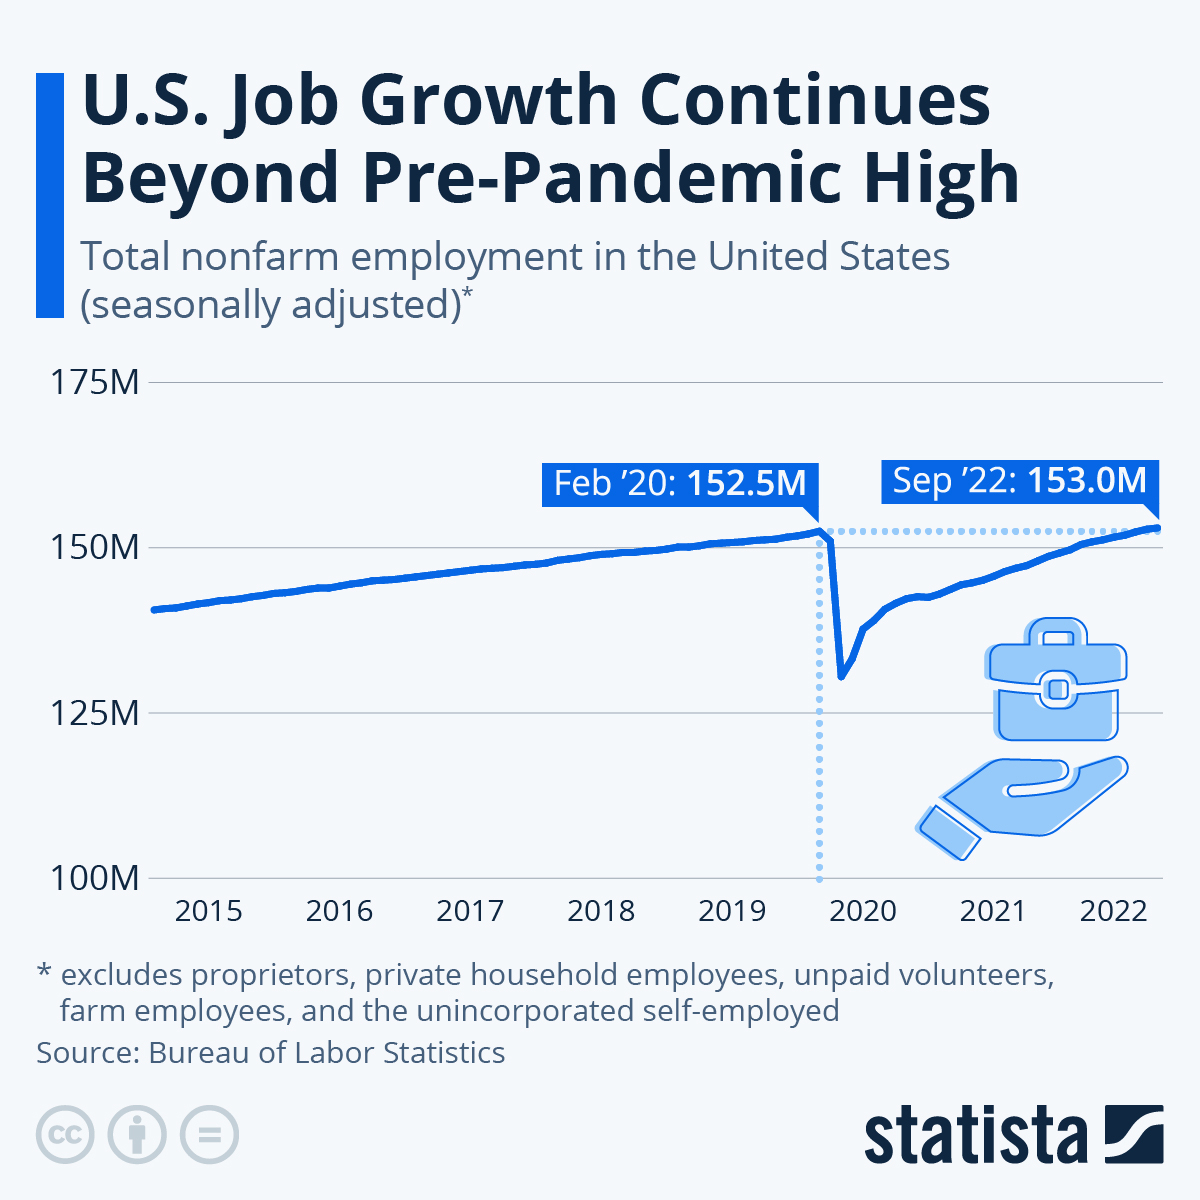 这张图表显示了美国就业增长如何持续超过疫情前的高位。